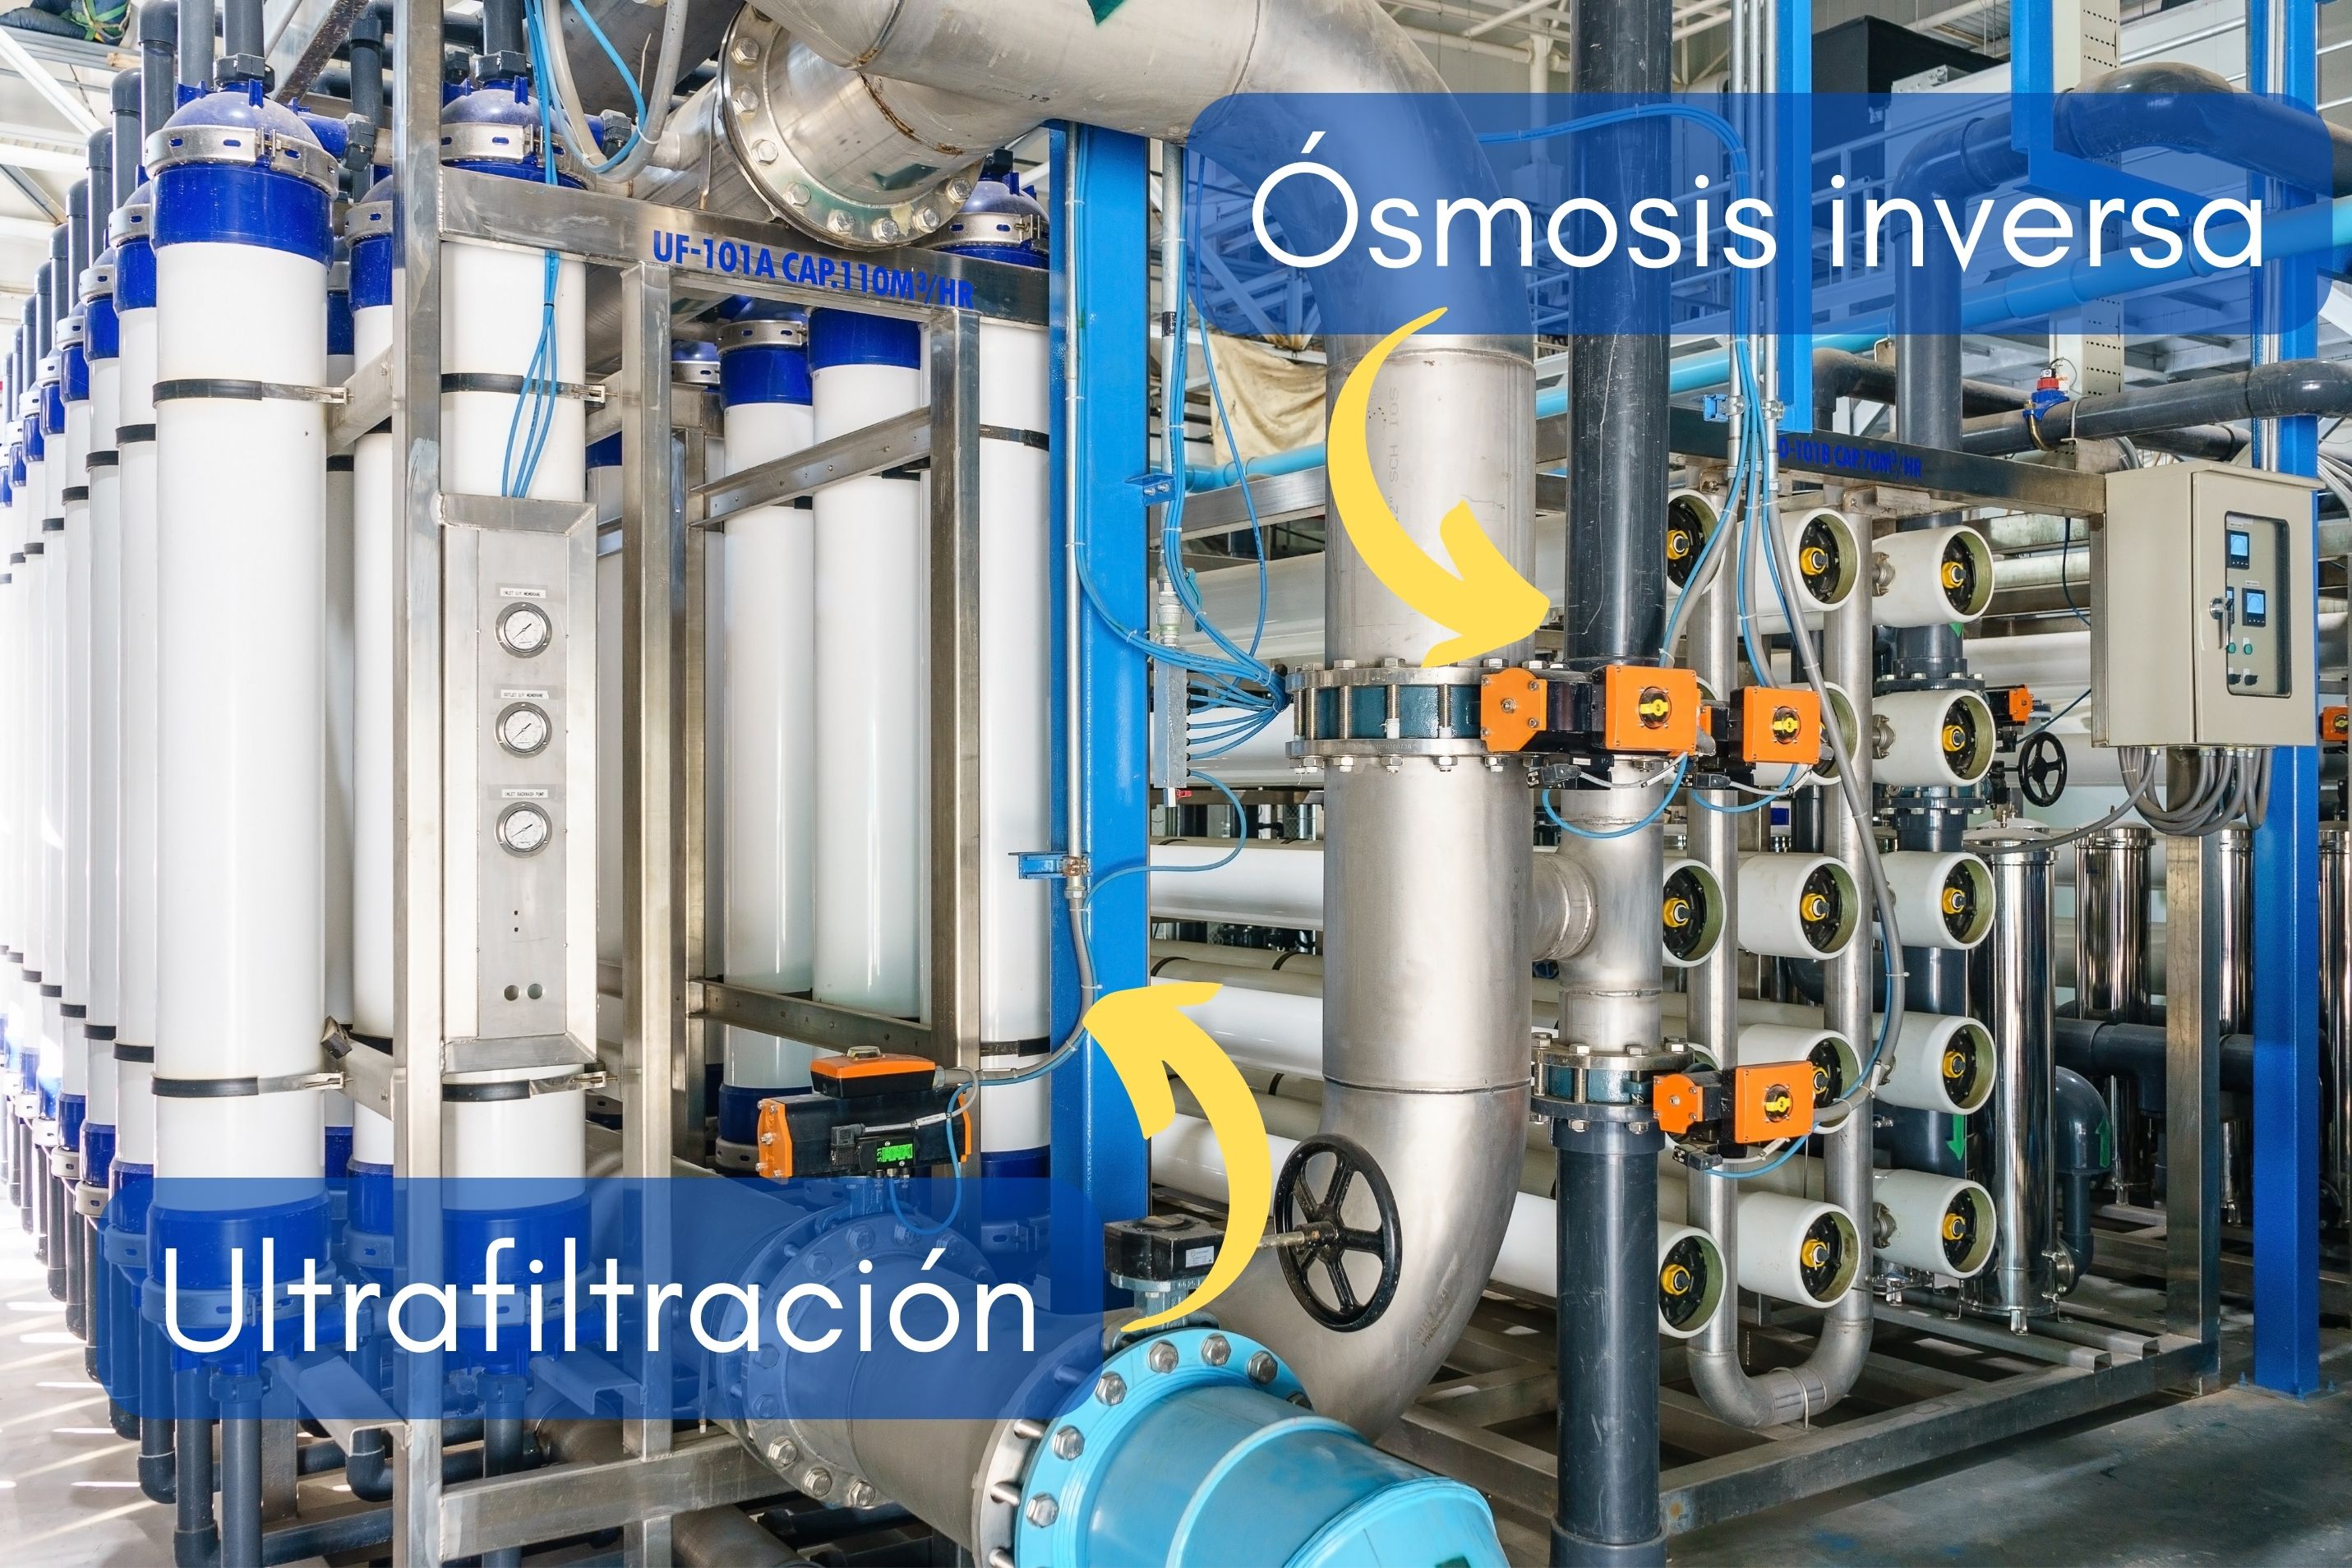 ultrafiltración vs osmosis inversa